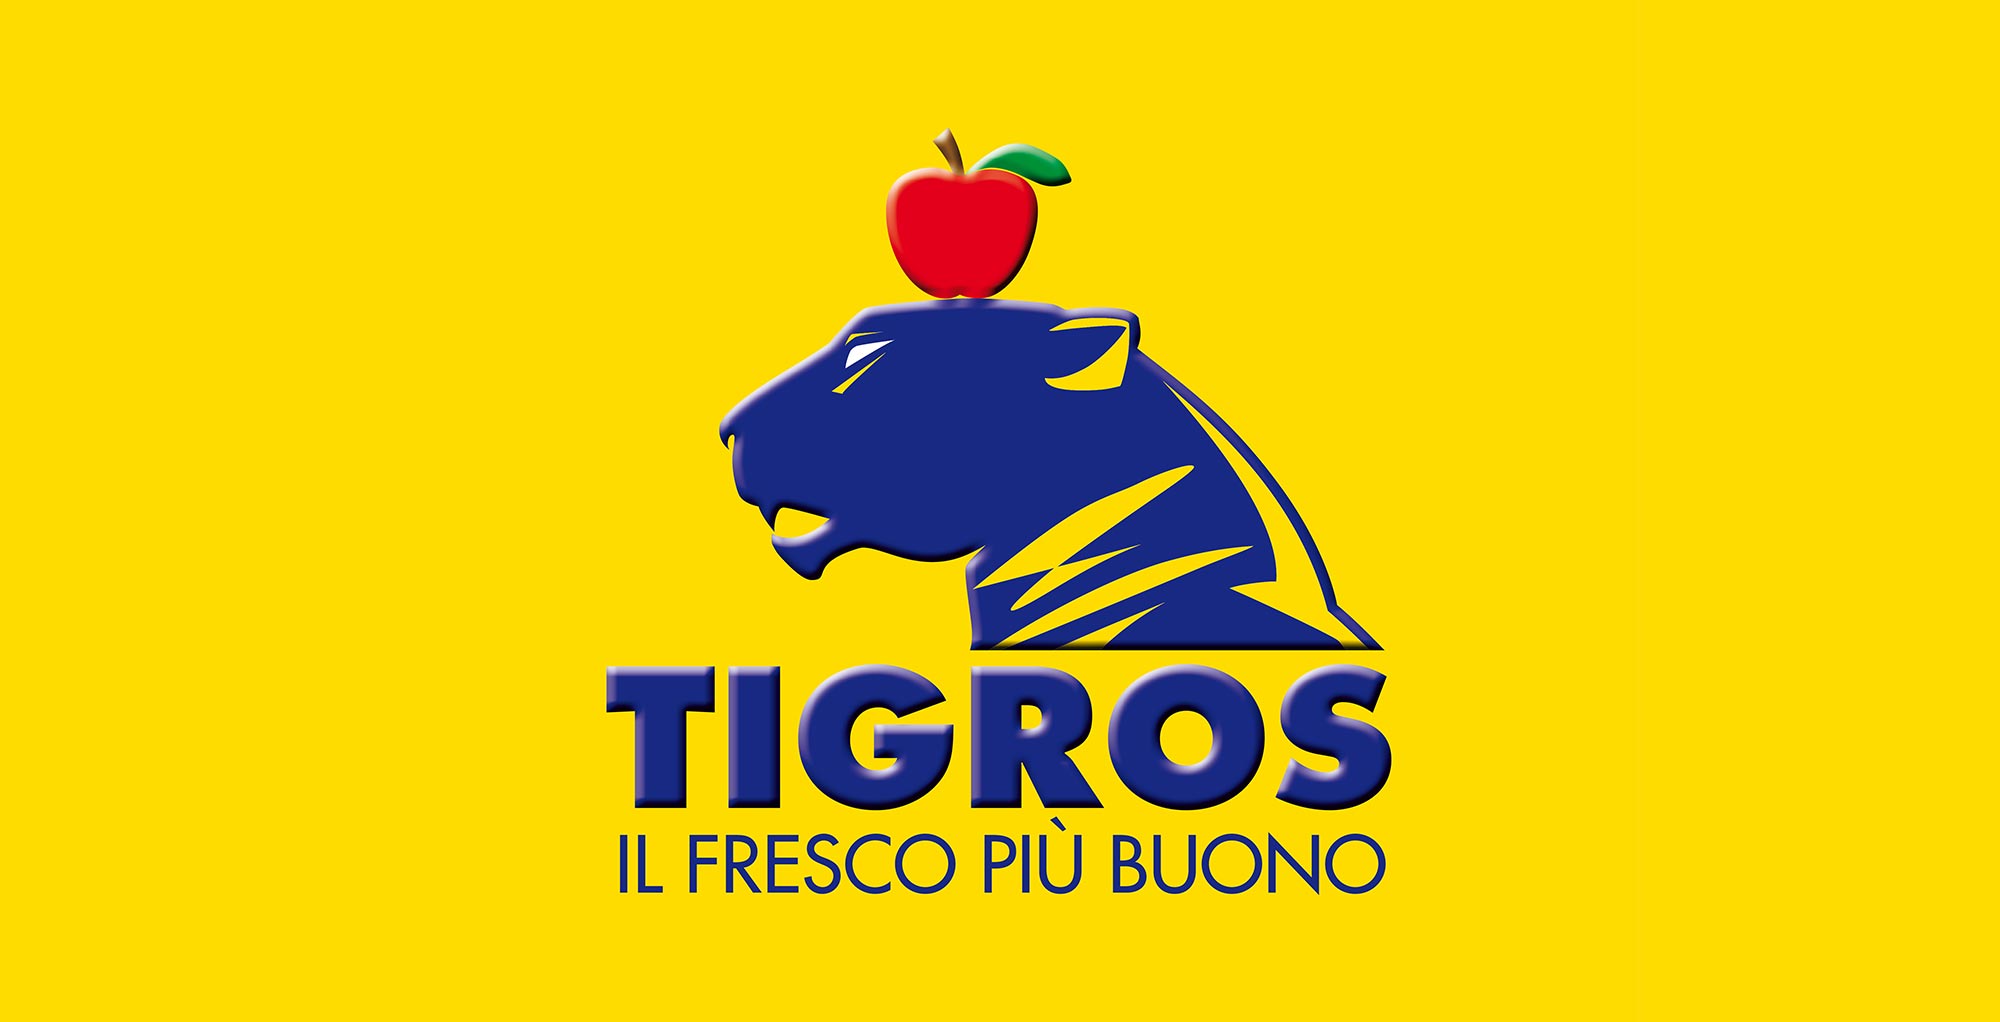 Tigros logo